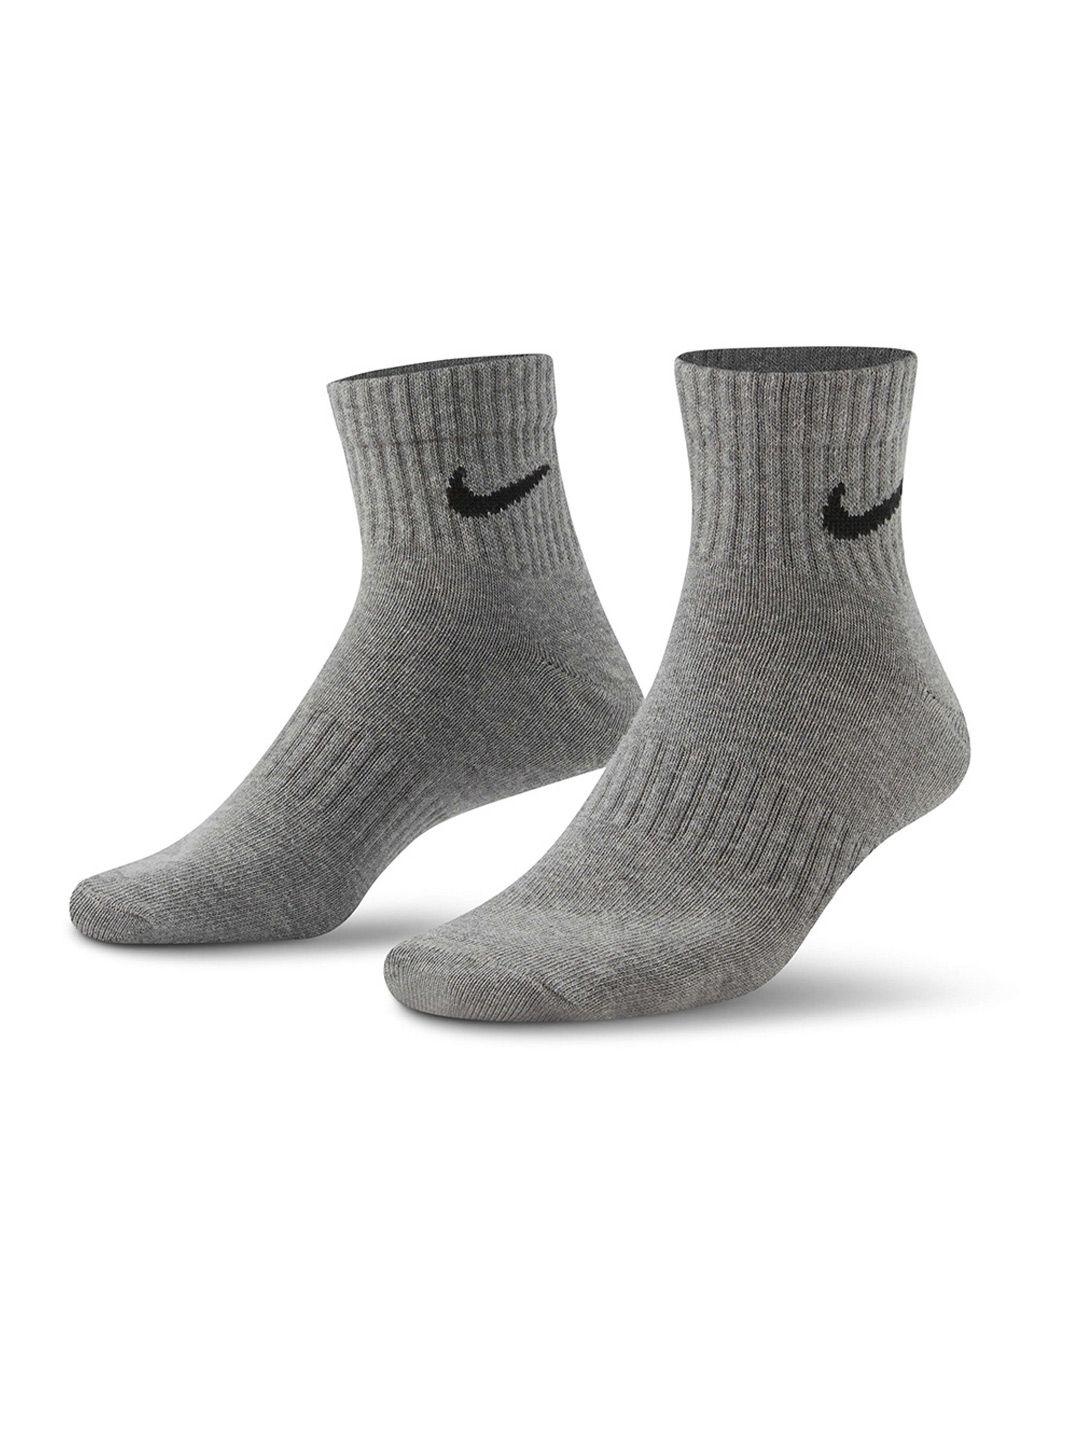 nike-men-pack-of-3-patterned-training-ankle-length-socks